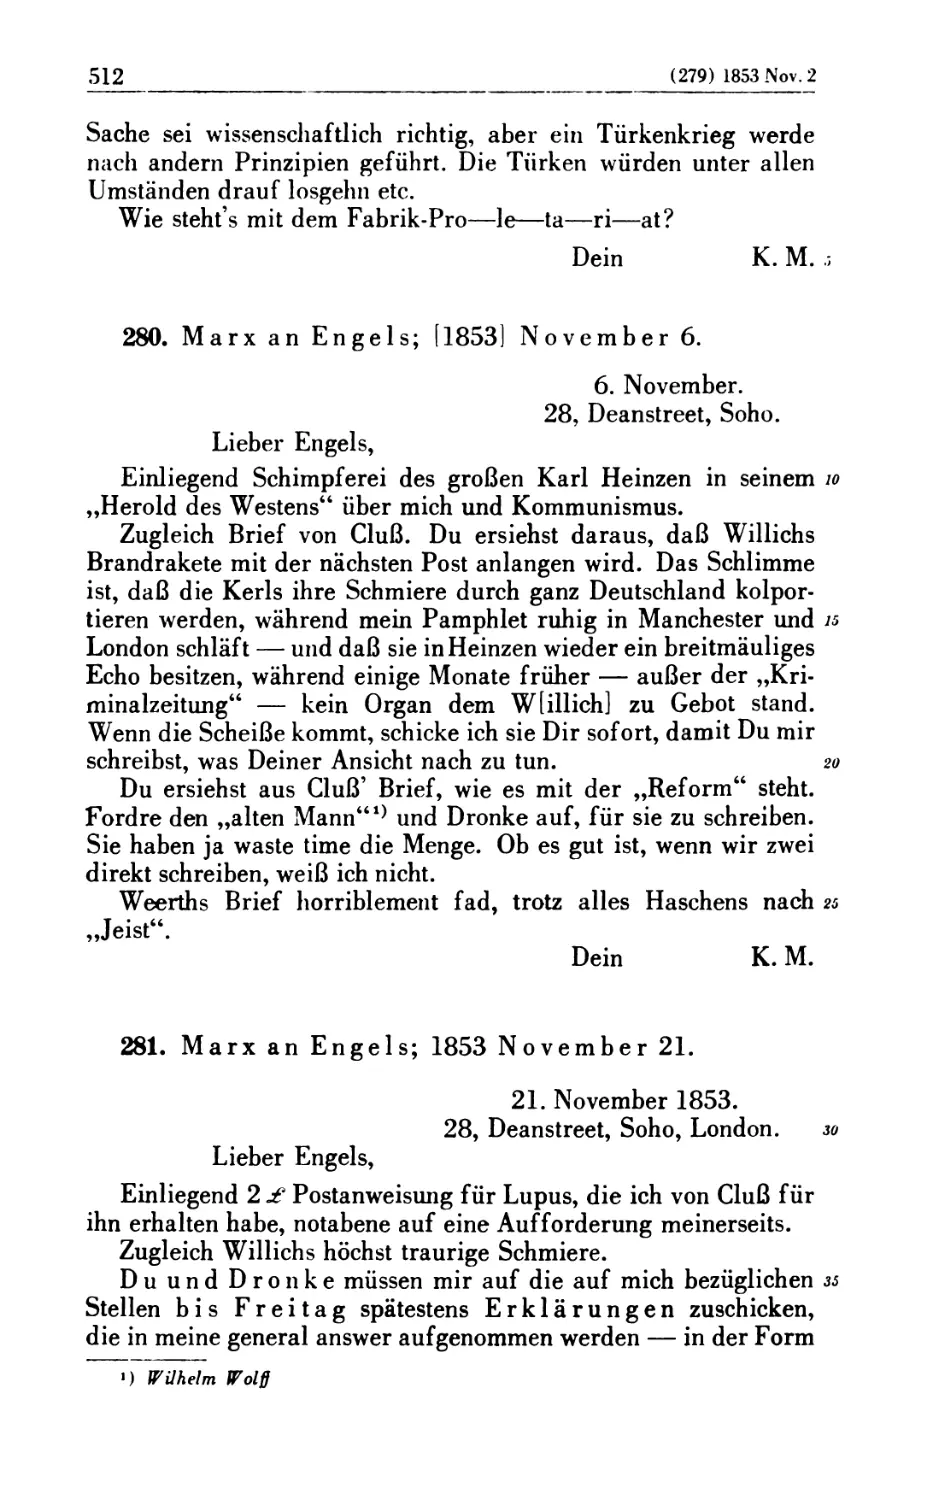 280. Marx an Engels; [1853] November 6
281. Marx an Engels; 1853 November 21